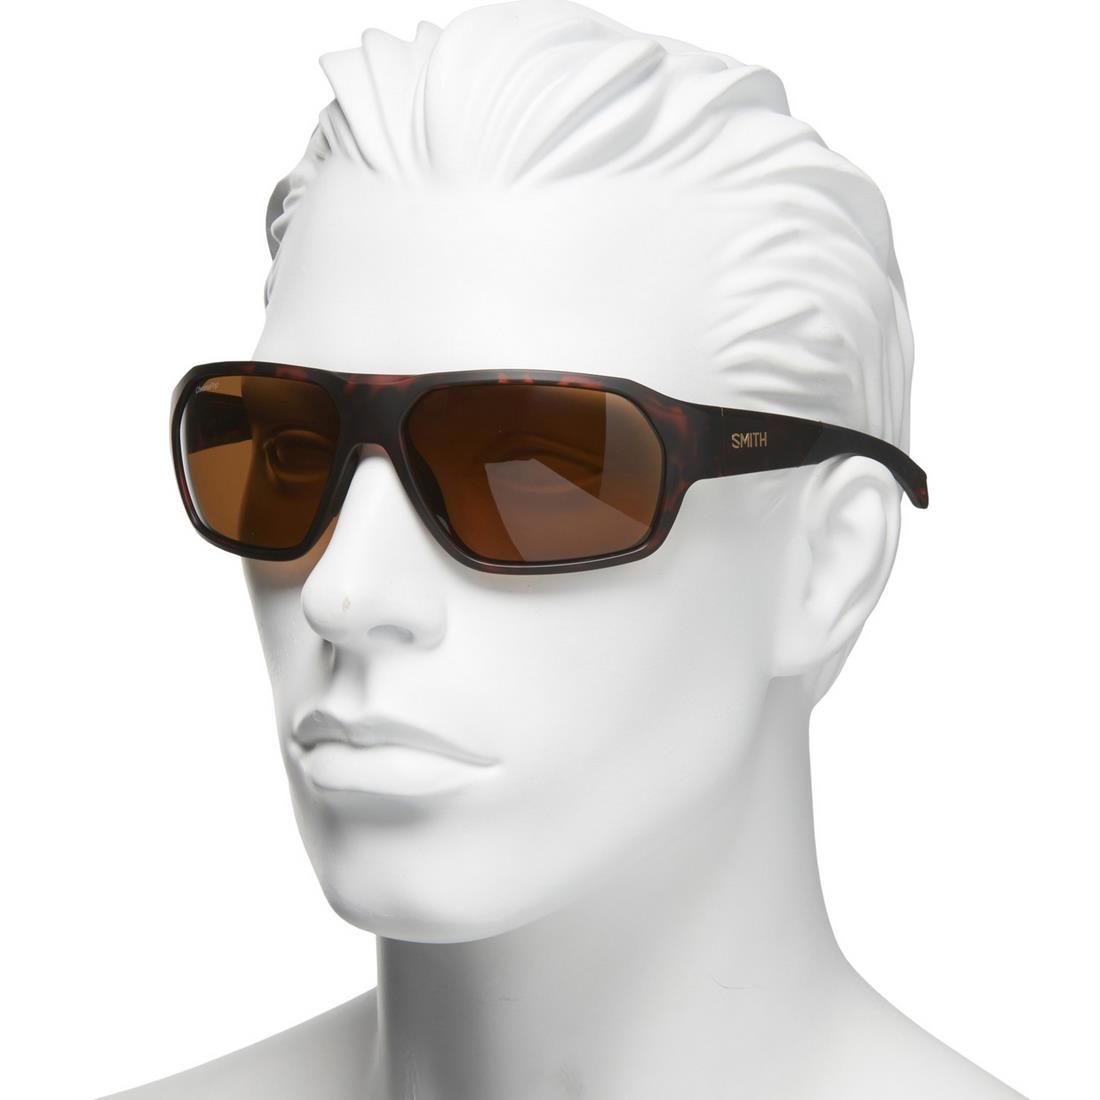 Smith For Men Deckboss Sunglasses - Chromapop Polarized Lenses